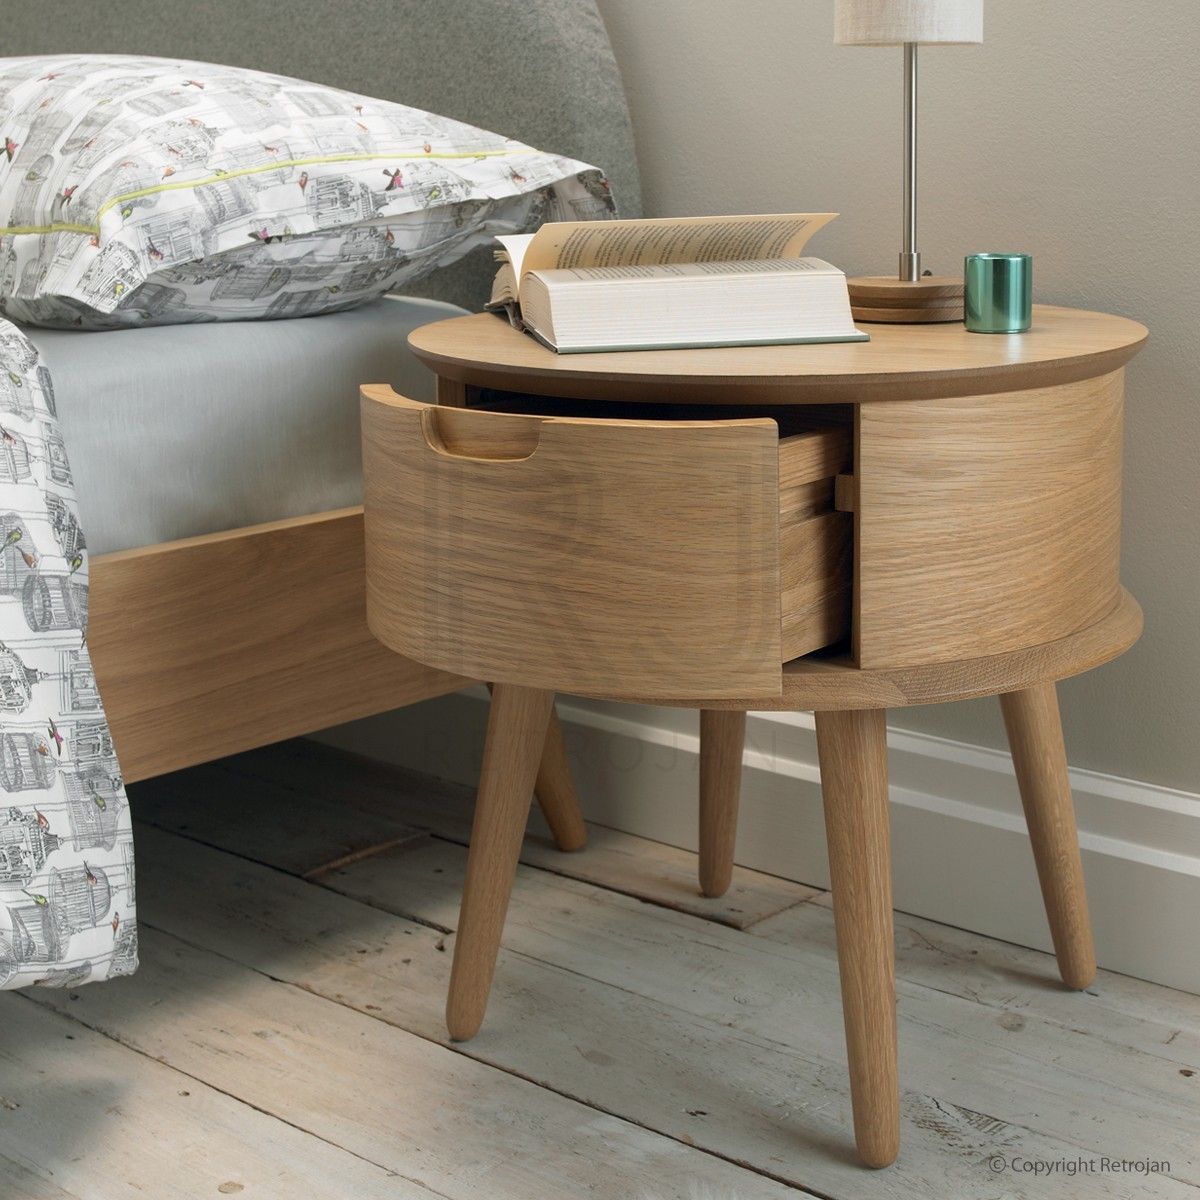 Một kiểu dáng hình tròn khác làm từ gỗ công nghiệp kết hợp ngăn kéo, thiết kế rất gọn nhẹ nên bạn có thể dễ dàng di chuyển đến nhiều vị trí trong nhà. Thậm chí khi không sử dụng làm táp đầu giường có thể chuyển đổi thành bàn phụ cho phòng khách.